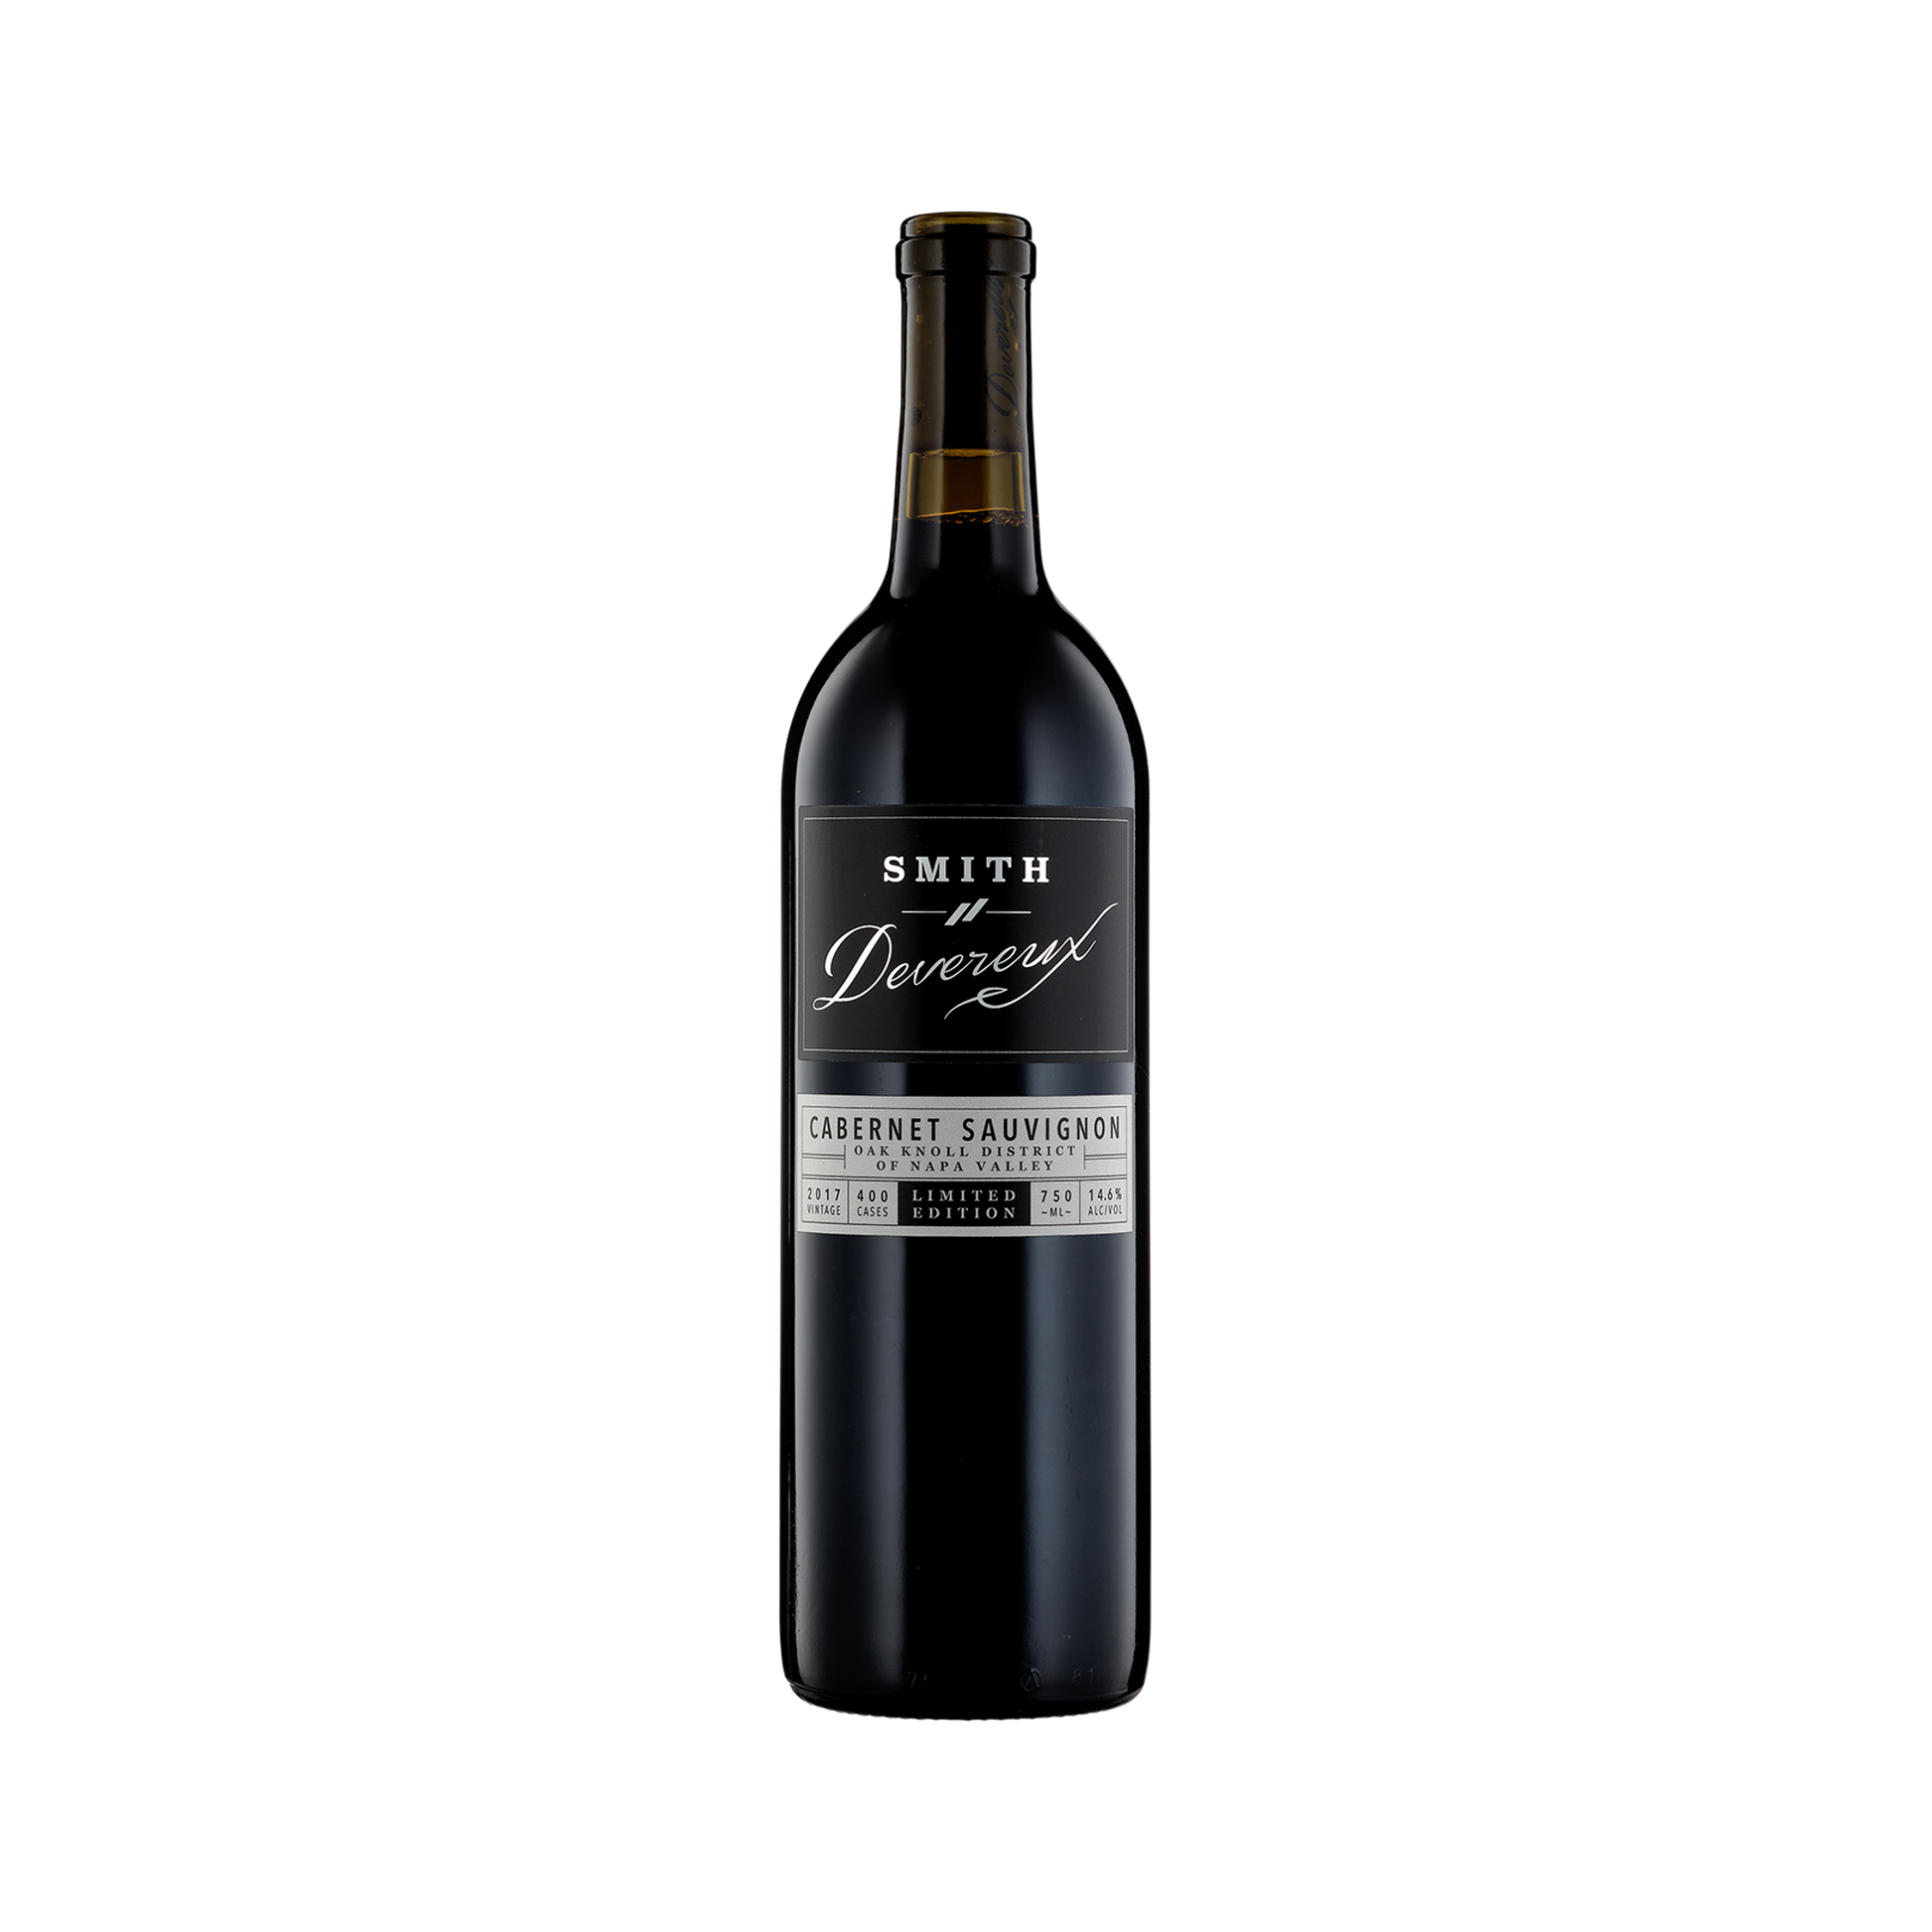 A bottle of Smith-Devereux 2017 Cabernet Sauvignon Limited Edition